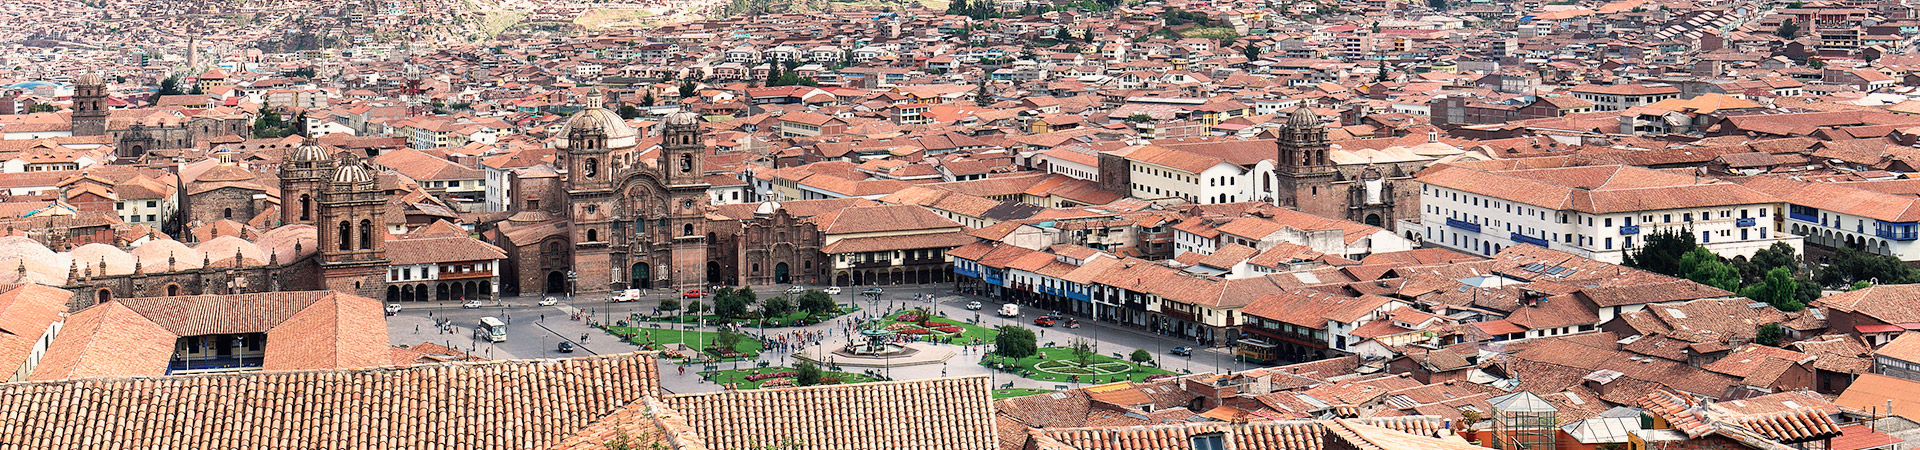 Half Day Cusco City & The Incan Empire